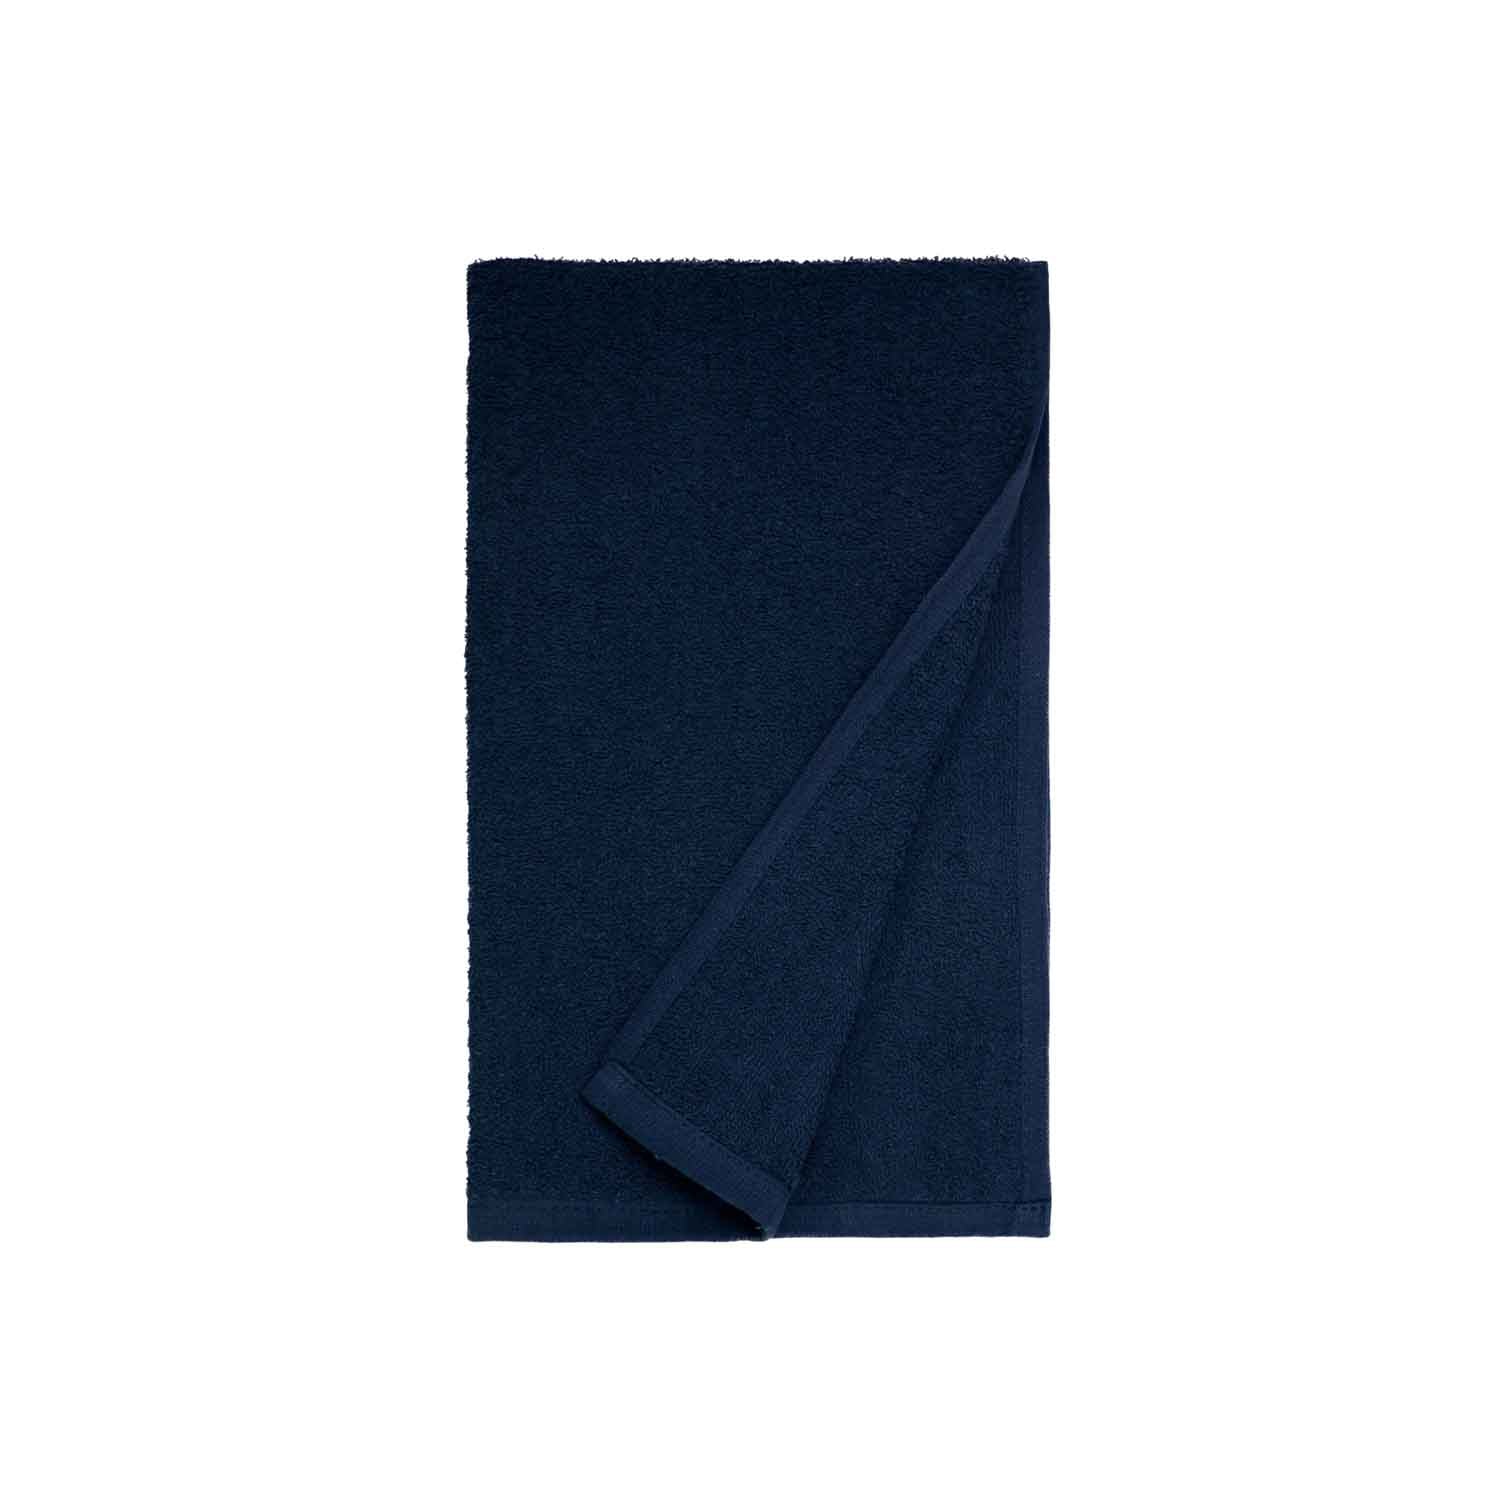 American Dawn | Ascent28 16X28 Inch Dark Blue Car Wash Towel American Dawn